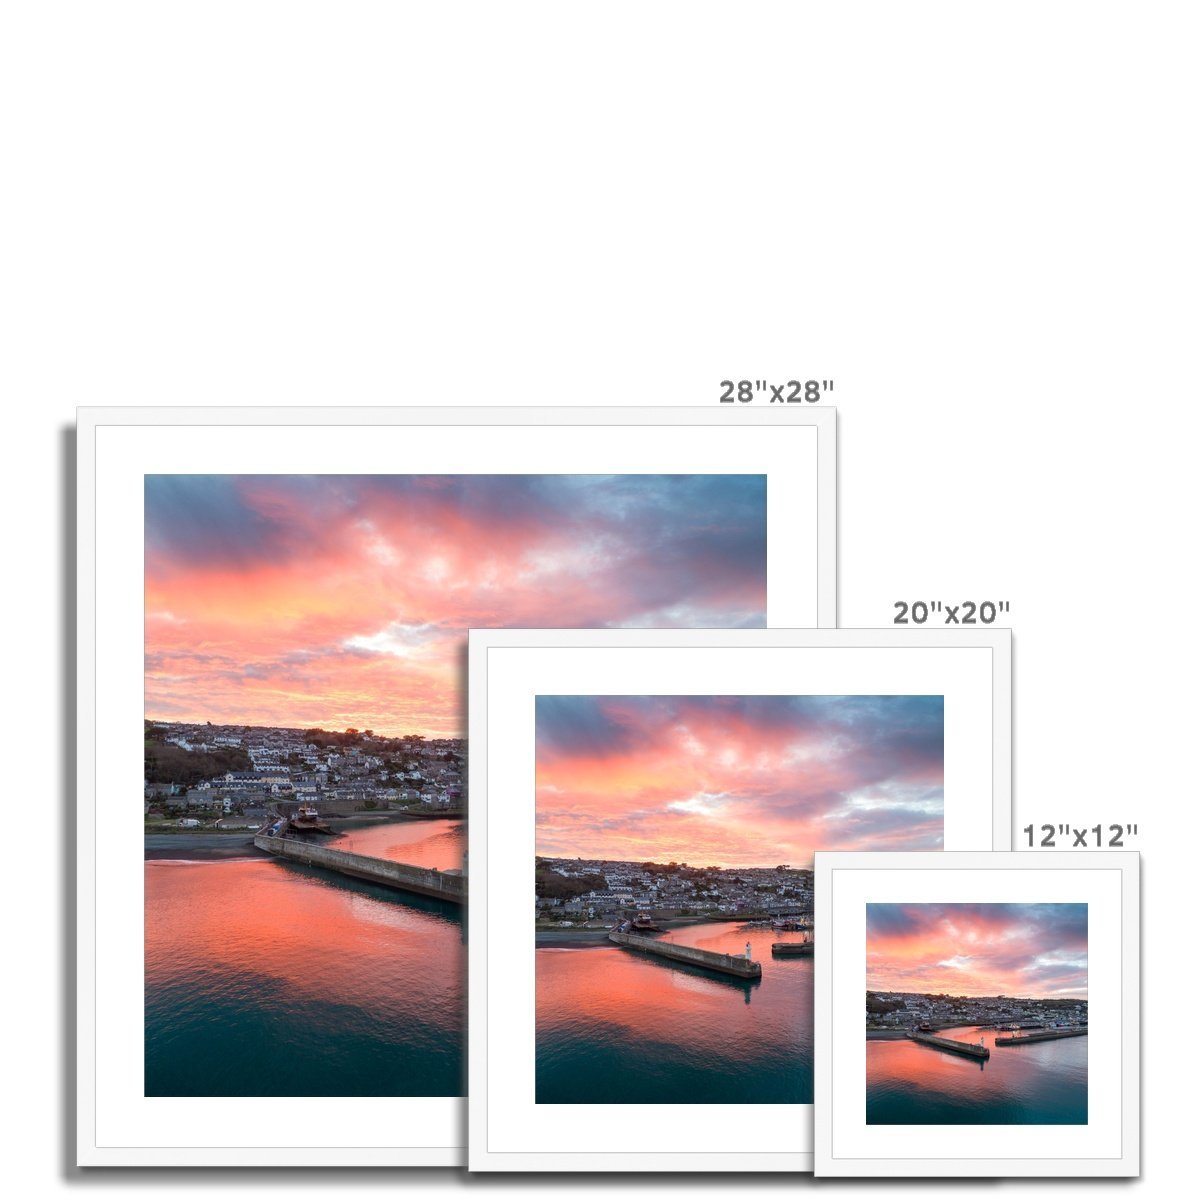 newlyn dawn frame sizes